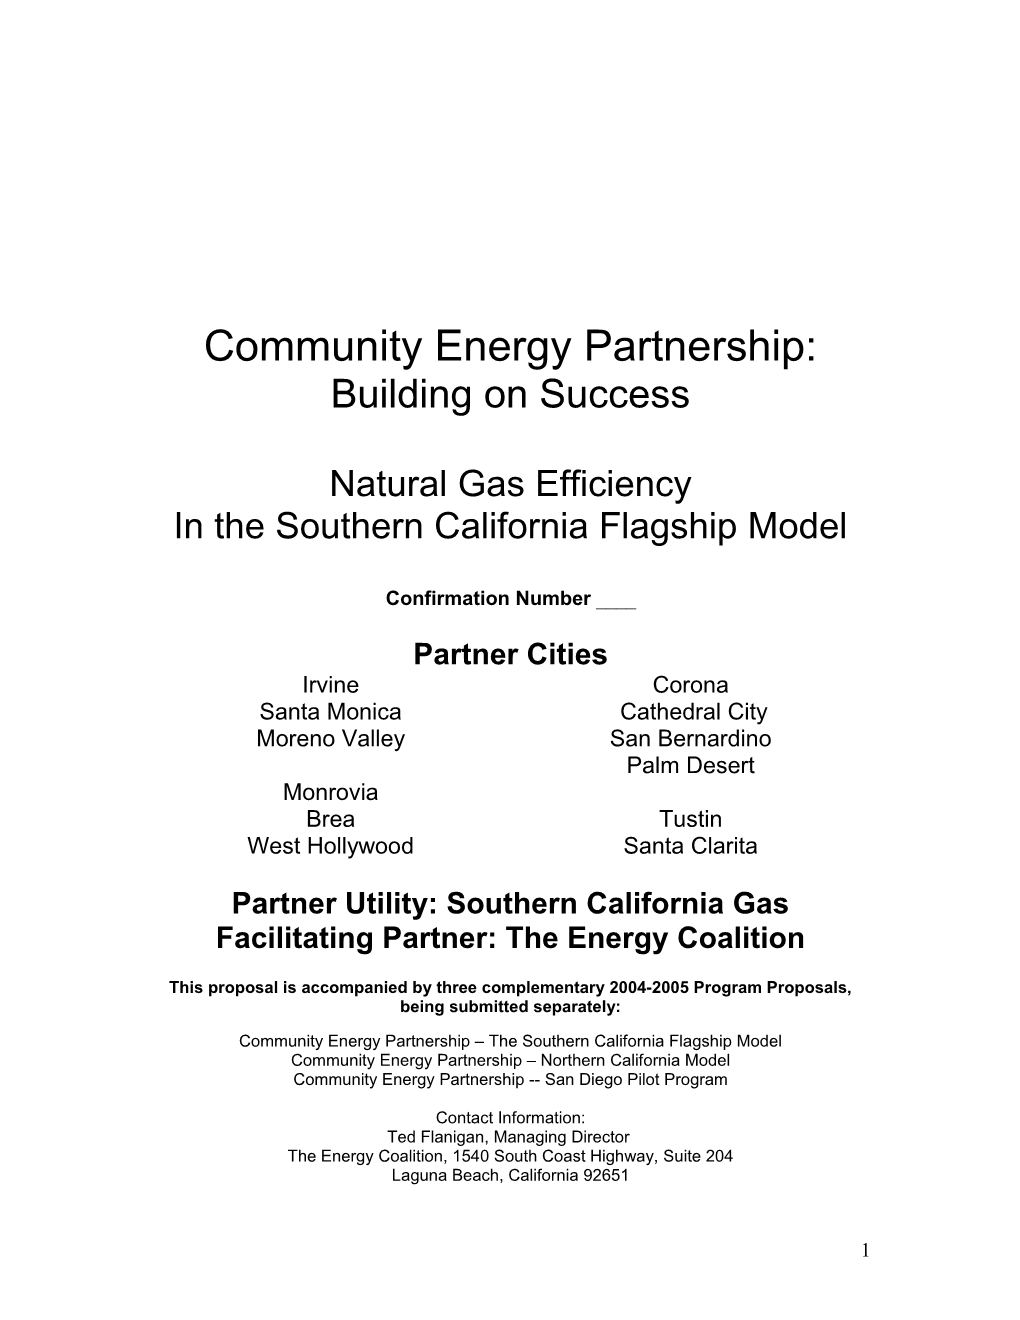 Community Energy Partnerships